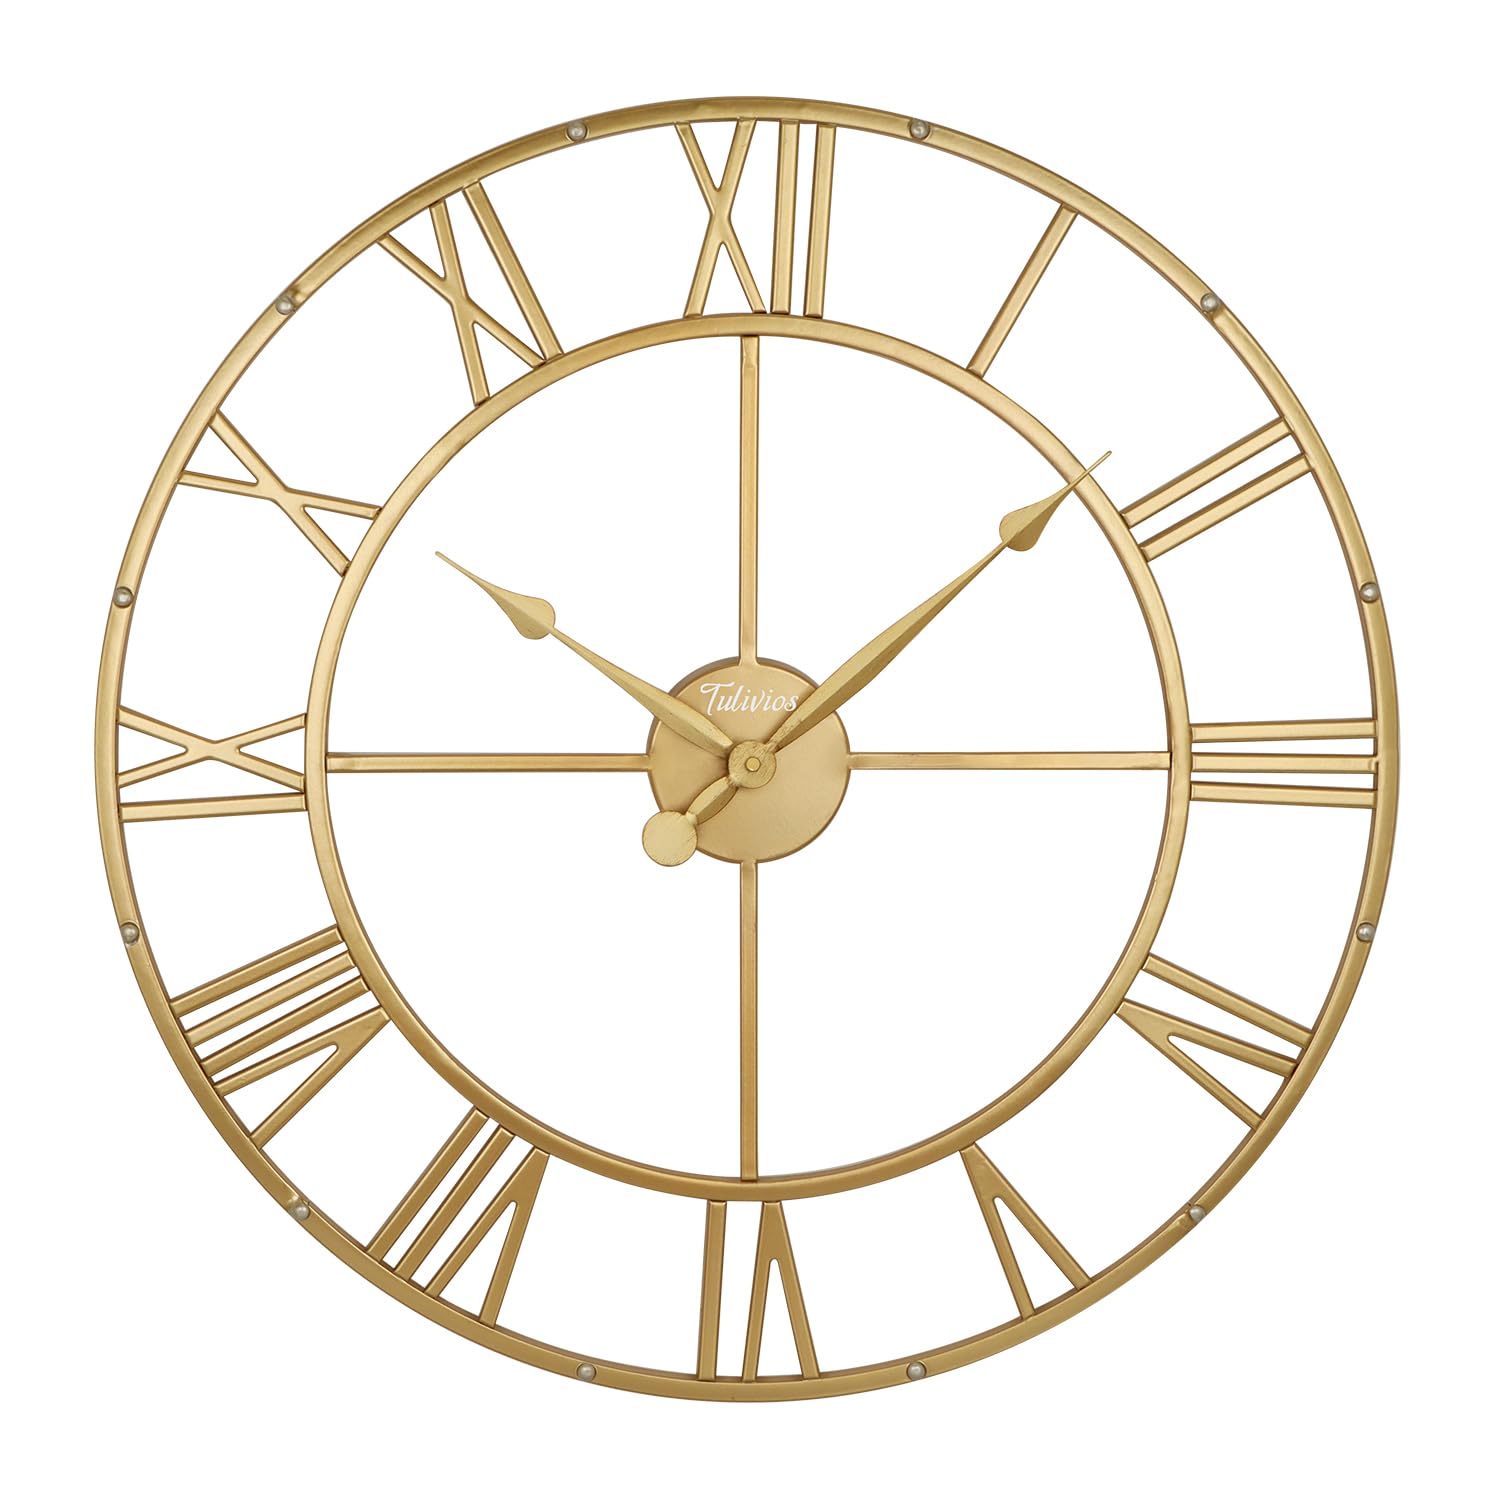 Tulivios Gold Metal Large Decorative Wall Clock